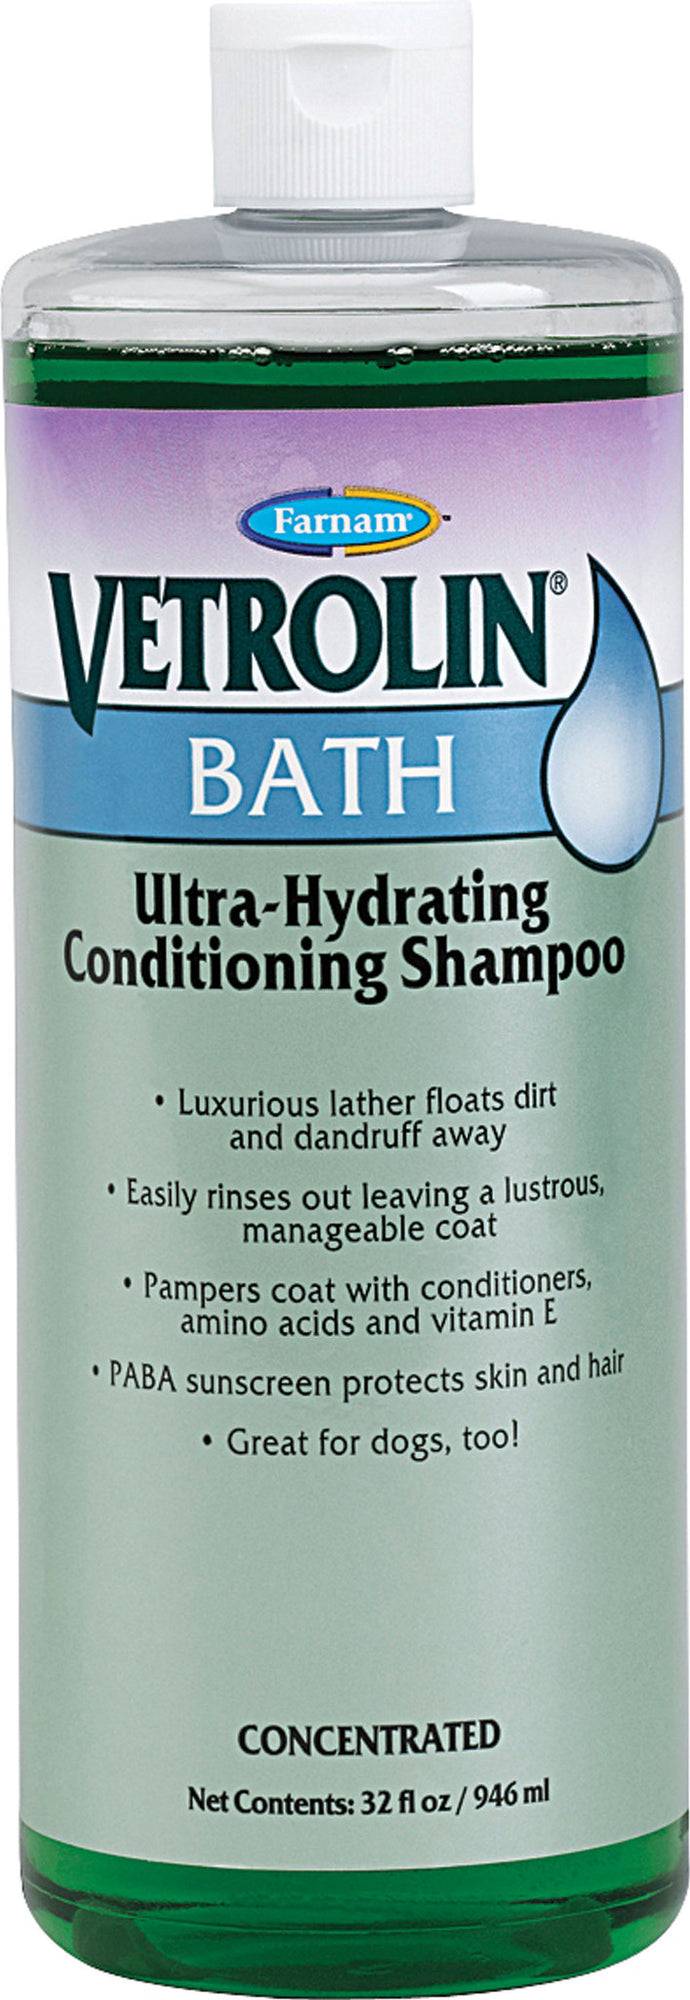 Vetrolin Bath Hydrating Shampoo